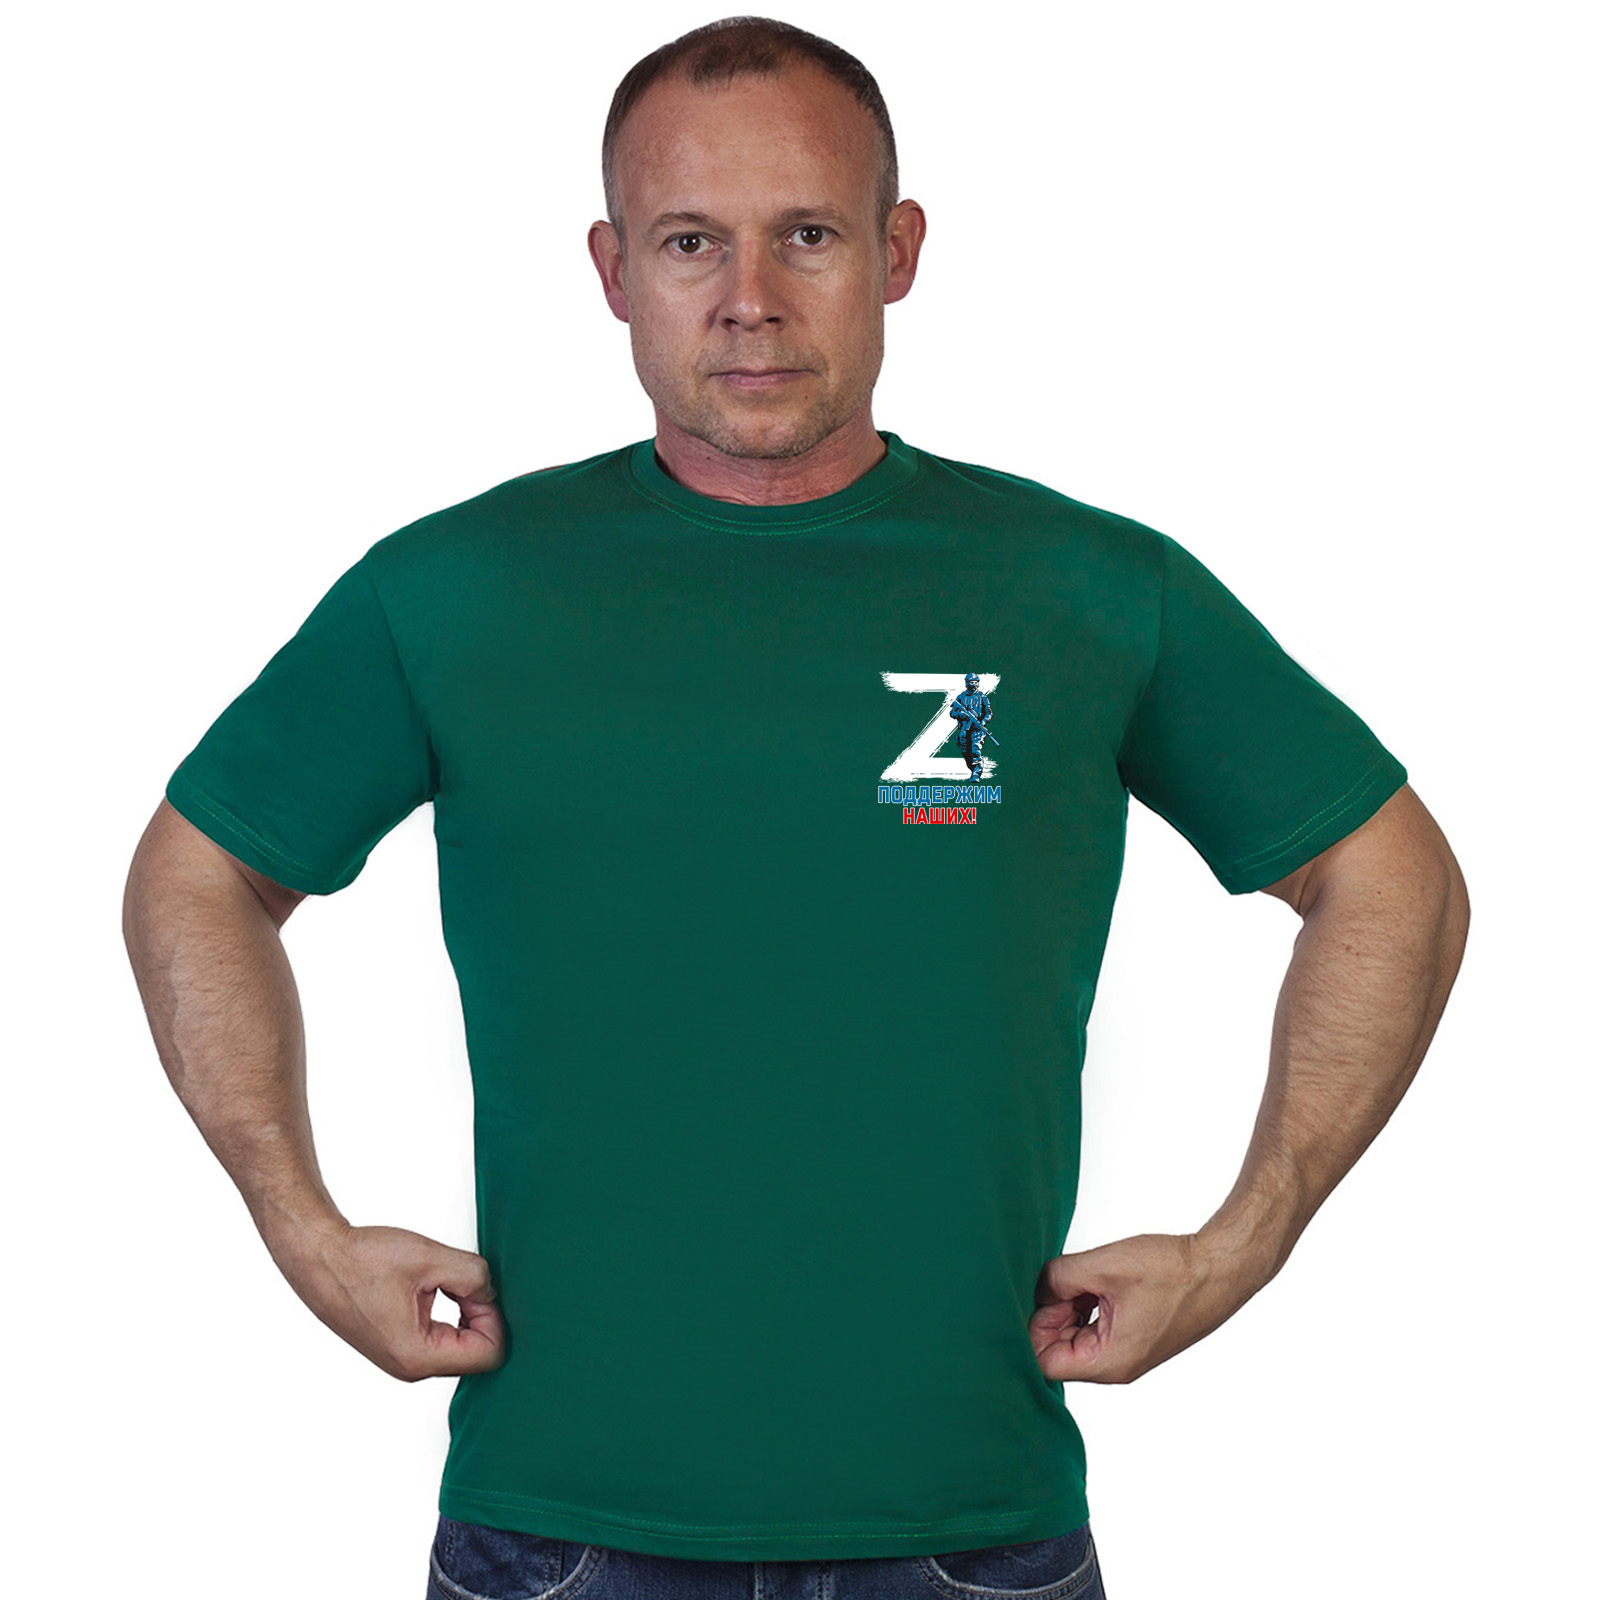 Зелёная футболка с трансфером Z "Поддержим наших!"